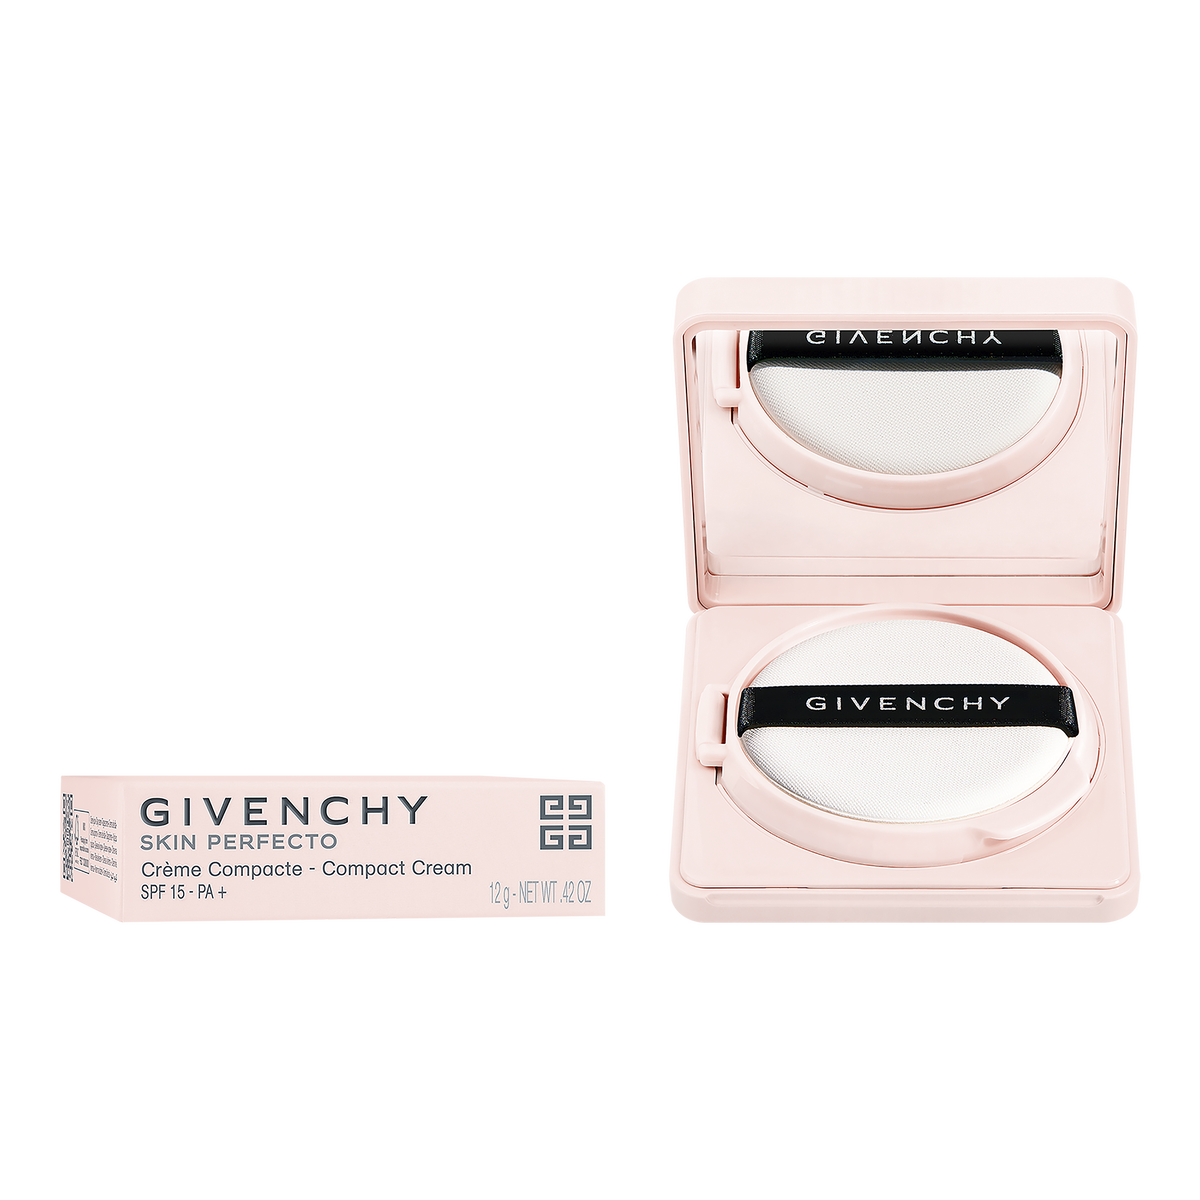 スキン PFCT コンパクト クリーム | GIVENCHY BEAUTY - コンパクト クリーム SPF 15 PA + | Givenchy  Beauty